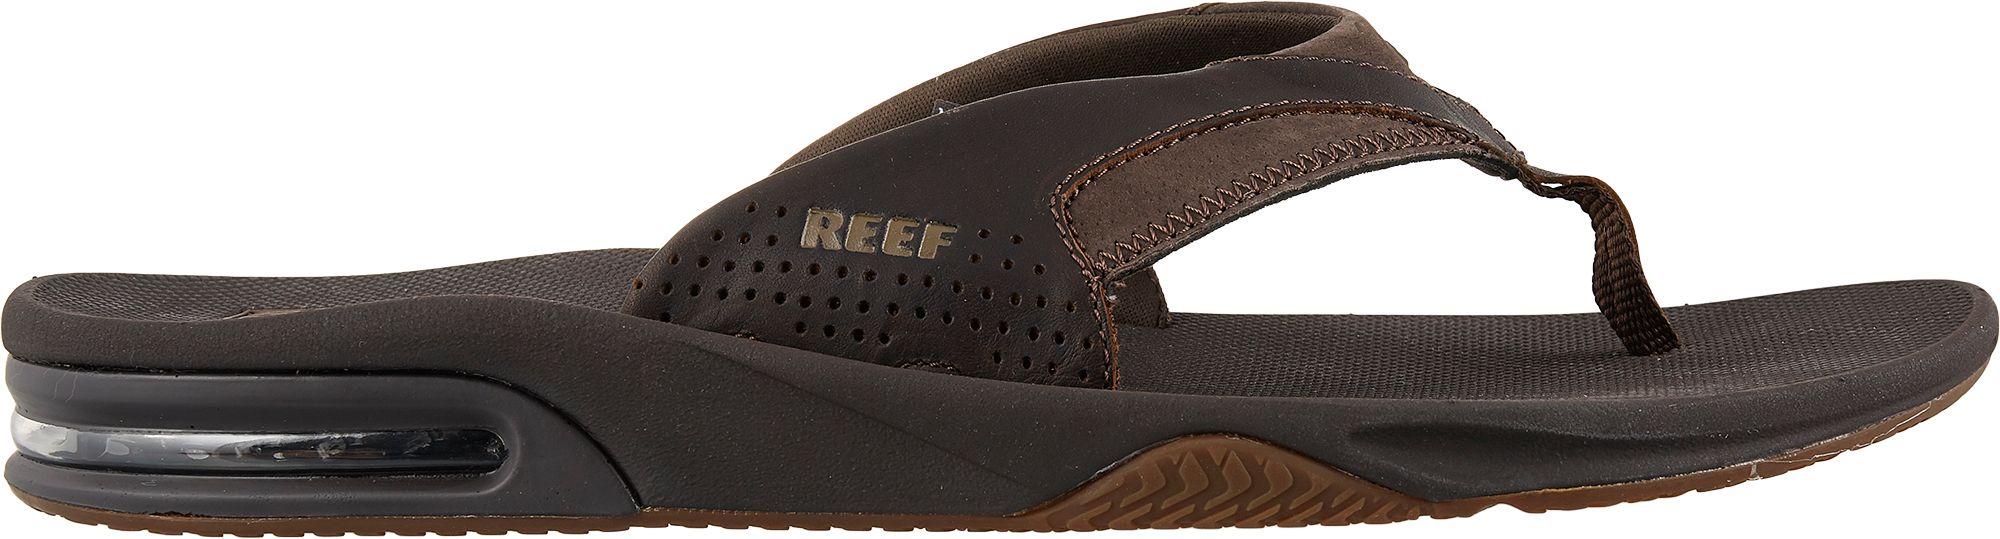 reef flip flops dicks